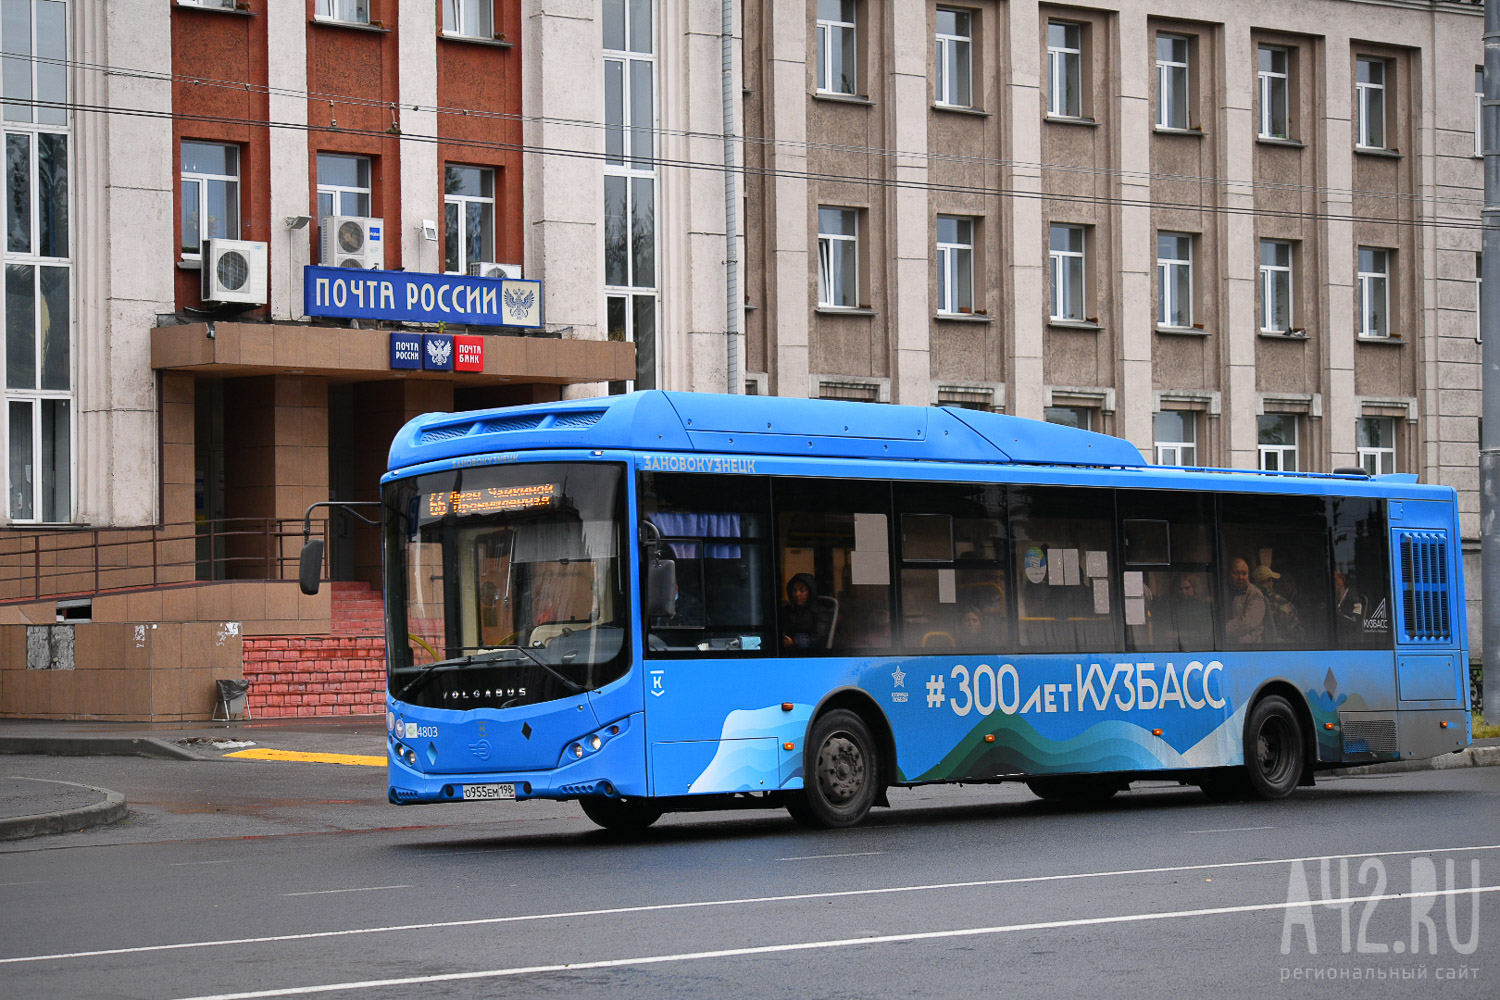 Специалисты объяснили причины невыполнения автобусных рейсов в Новокузнецке